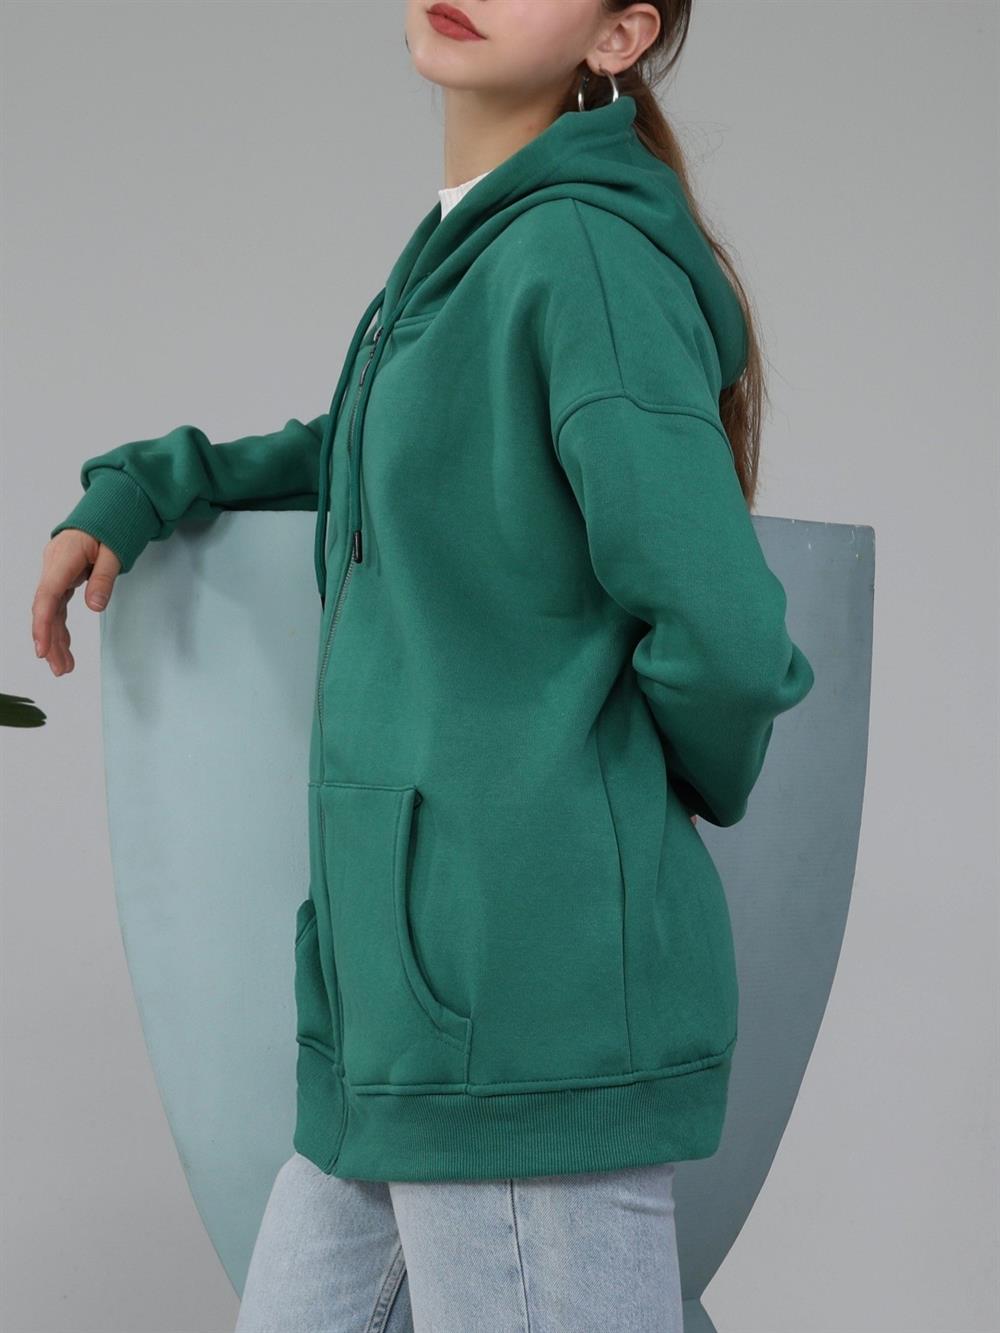 Şardonlu 3 İplik Kapşonlu Sweat -Yeşil - 153-0032-R35 | DIVON Marka Kapşonlu  Sweatshirt Modelleri | Kadın Tesettür Giyim - KaliteMall.com